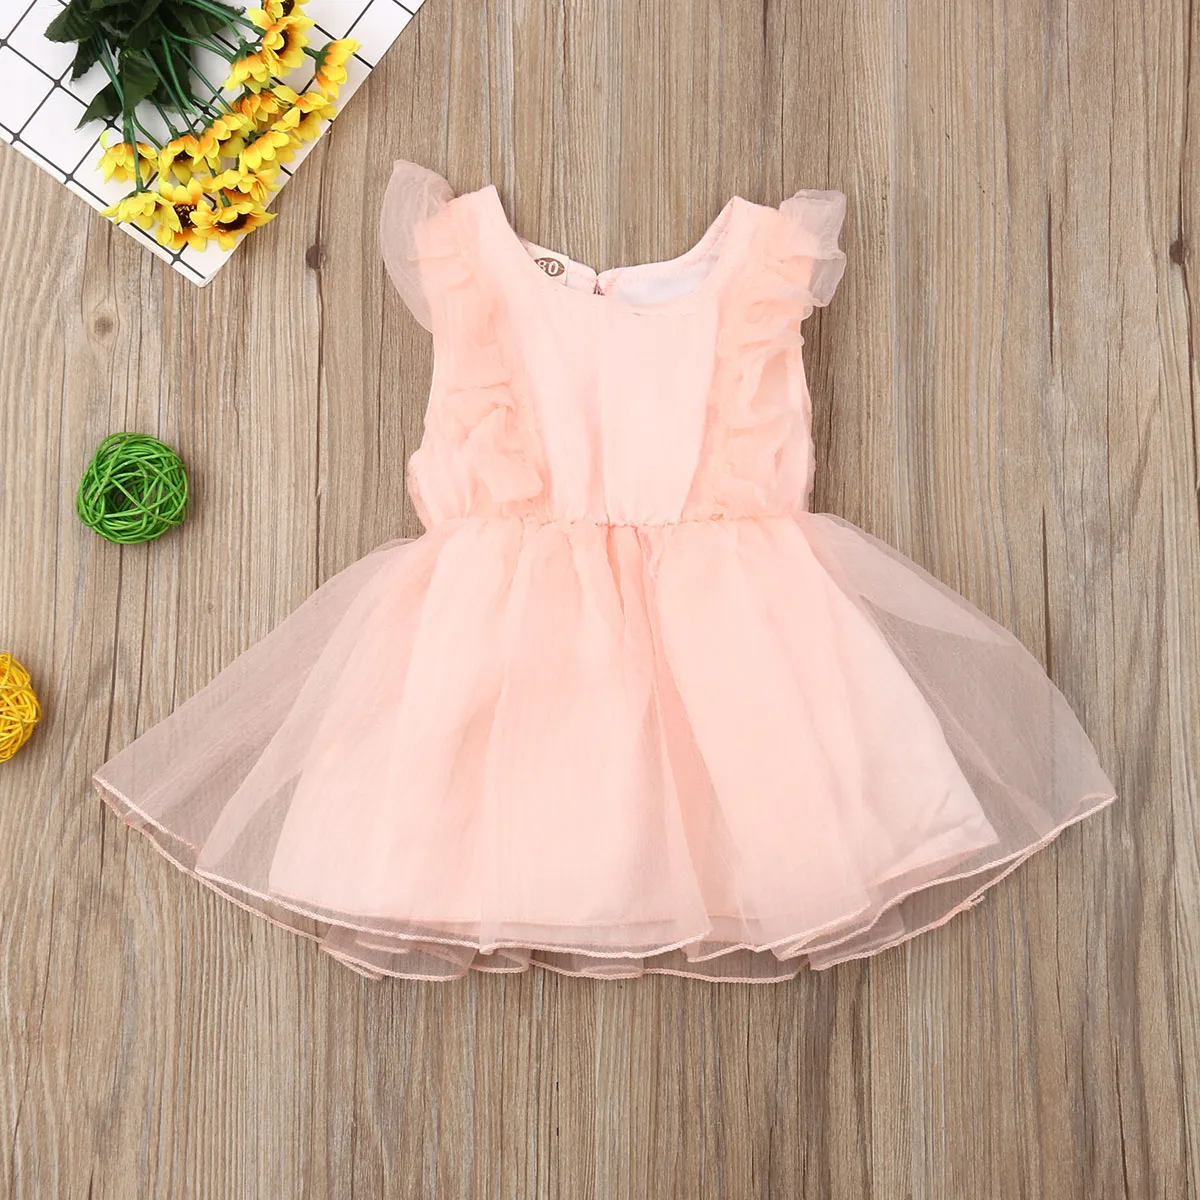 Одежда для малышей Детские юбка-пачка для девочек платье Летнее платье принцессы из кружева и тюля вечерние на свадьбу, день рождения, бальное платье, платье для девочек, костюмы - Цвет: Розовый